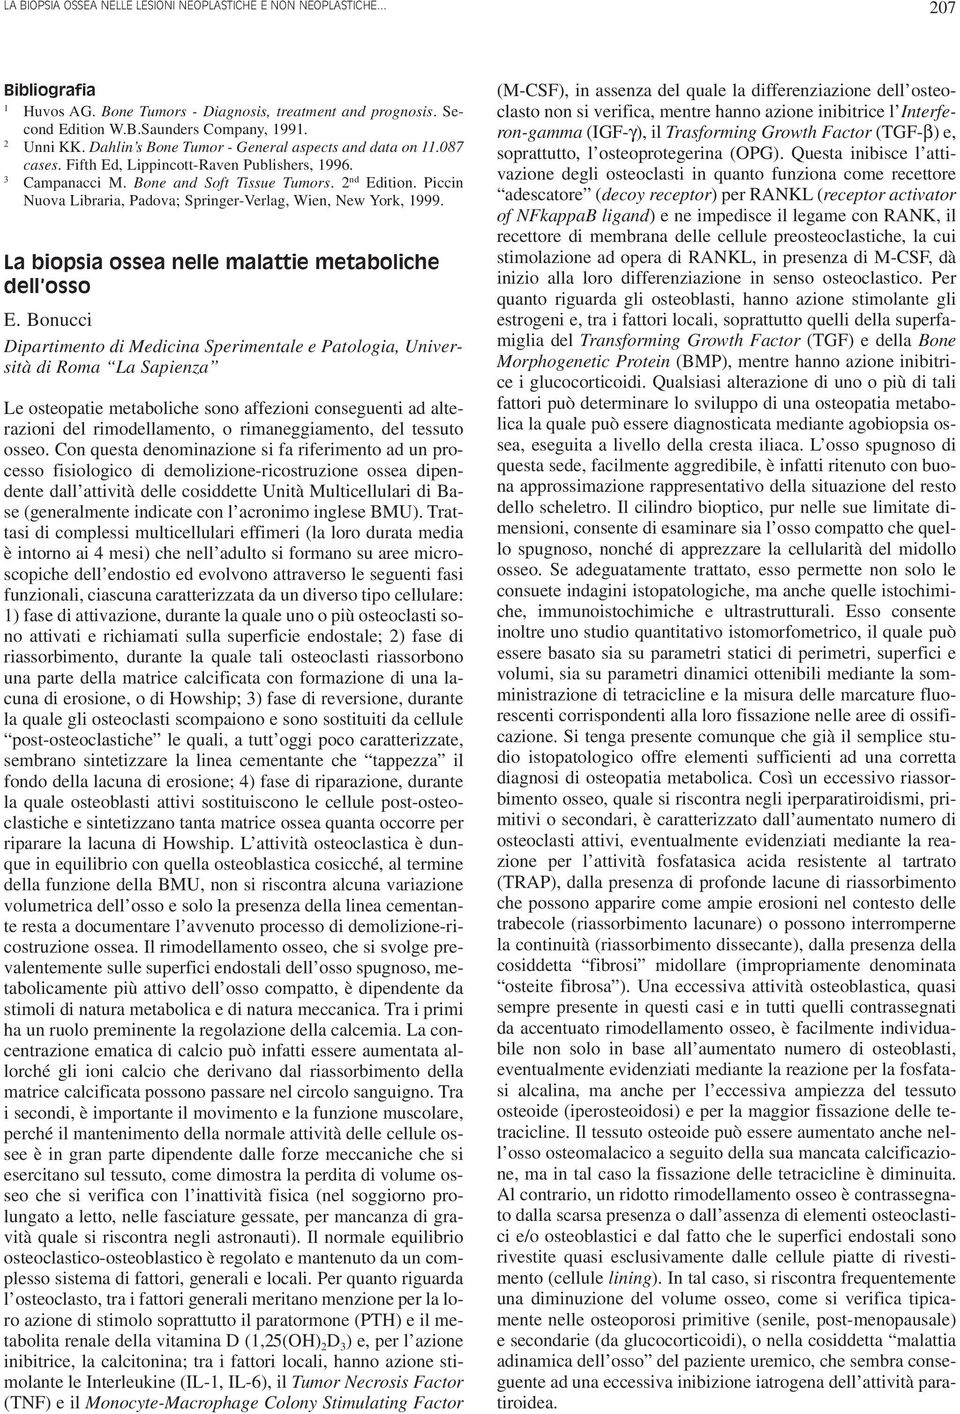 Piccin Nuova Libraria, Padova; Springer-Verlag, Wien, New York, 999. La biopsia ossea nelle malattie metaboliche dell osso E.